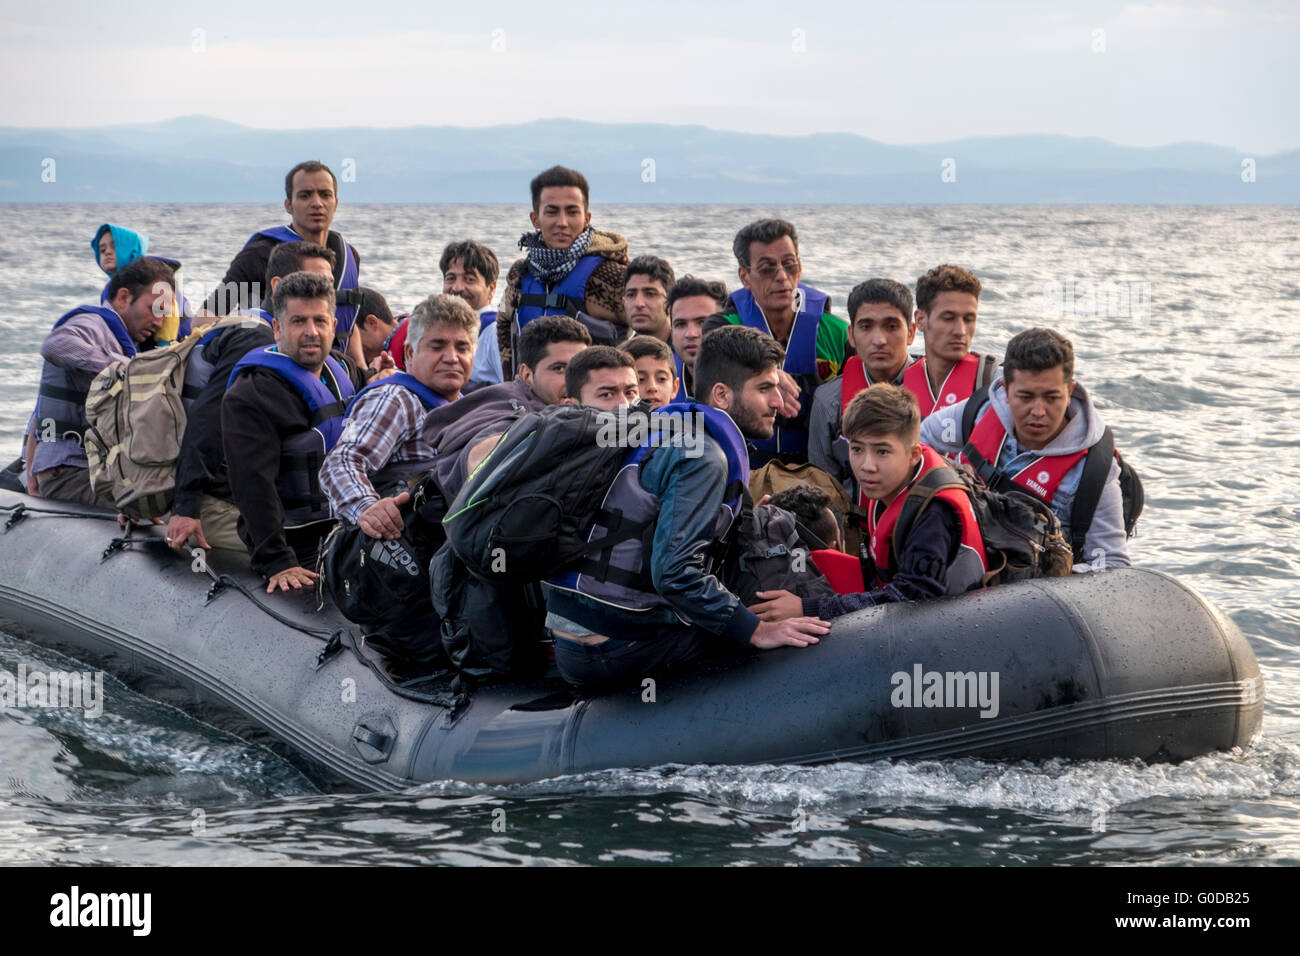 Refugiados que cruzan desde Turquía a Grecia en balsa inflable llegan a las costas del norte de Lesvos Foto de stock